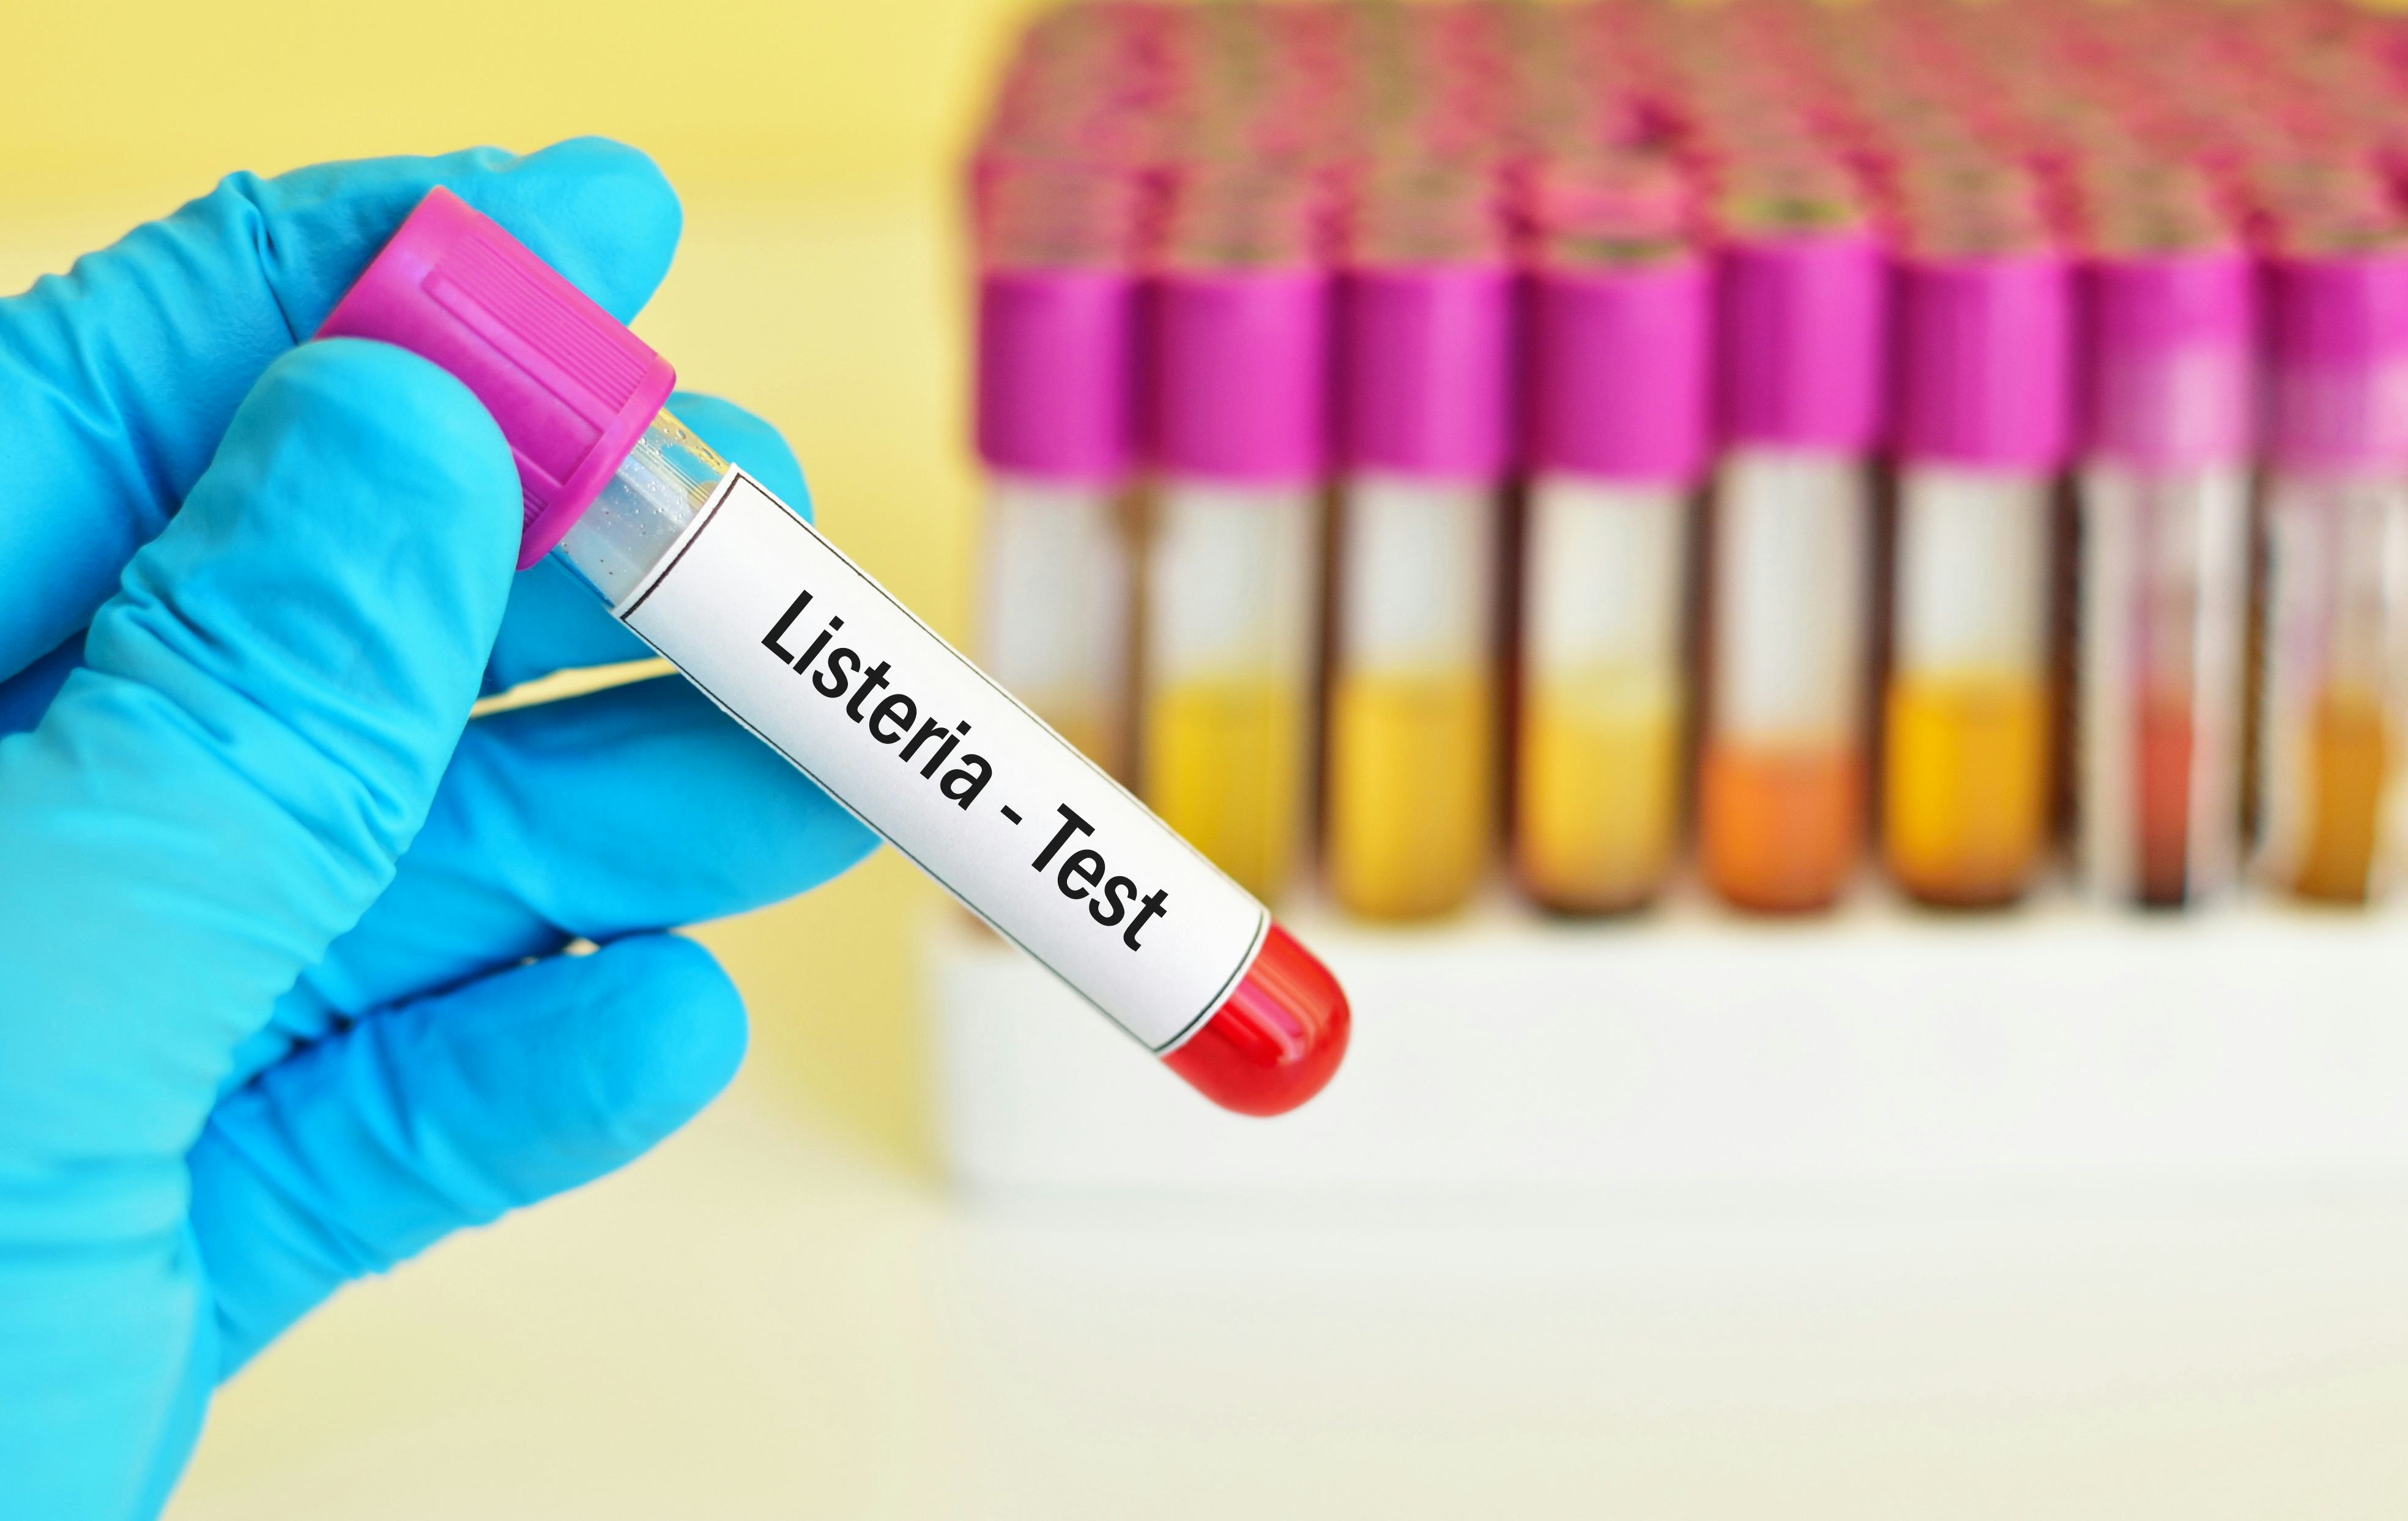 Listeria-besmetting, wie is aansprakelijk?